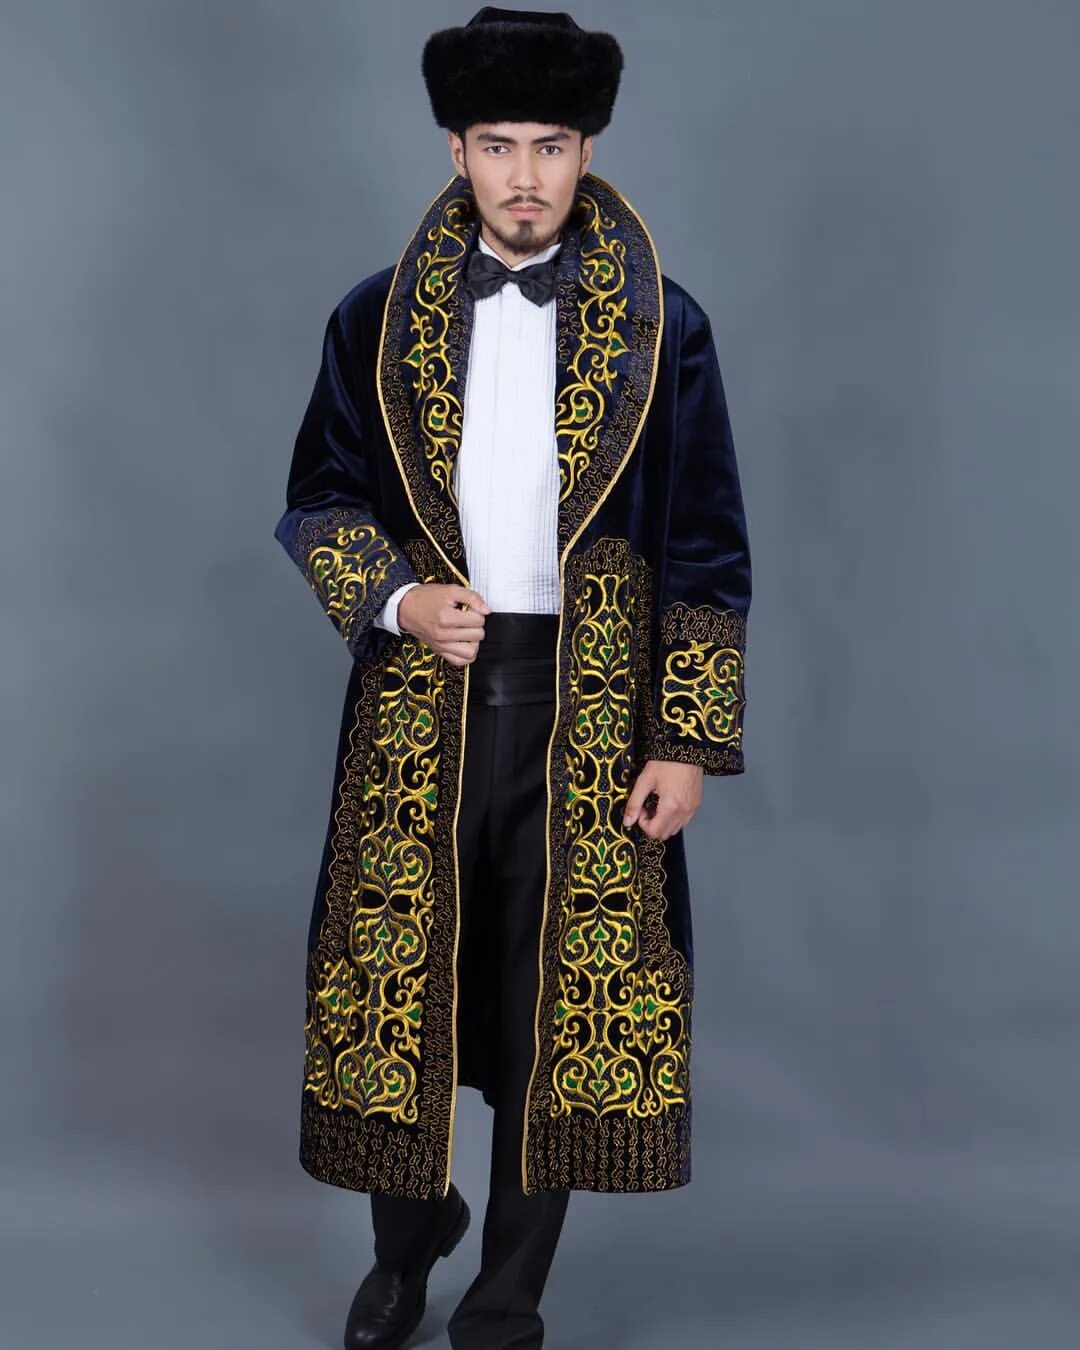 Чапан казахский. Казахская Национальная одежда шапан. Казахи национальный костюм шапан. Казахский национальный костюм чапан. Национальный чапан муж Киргизия.